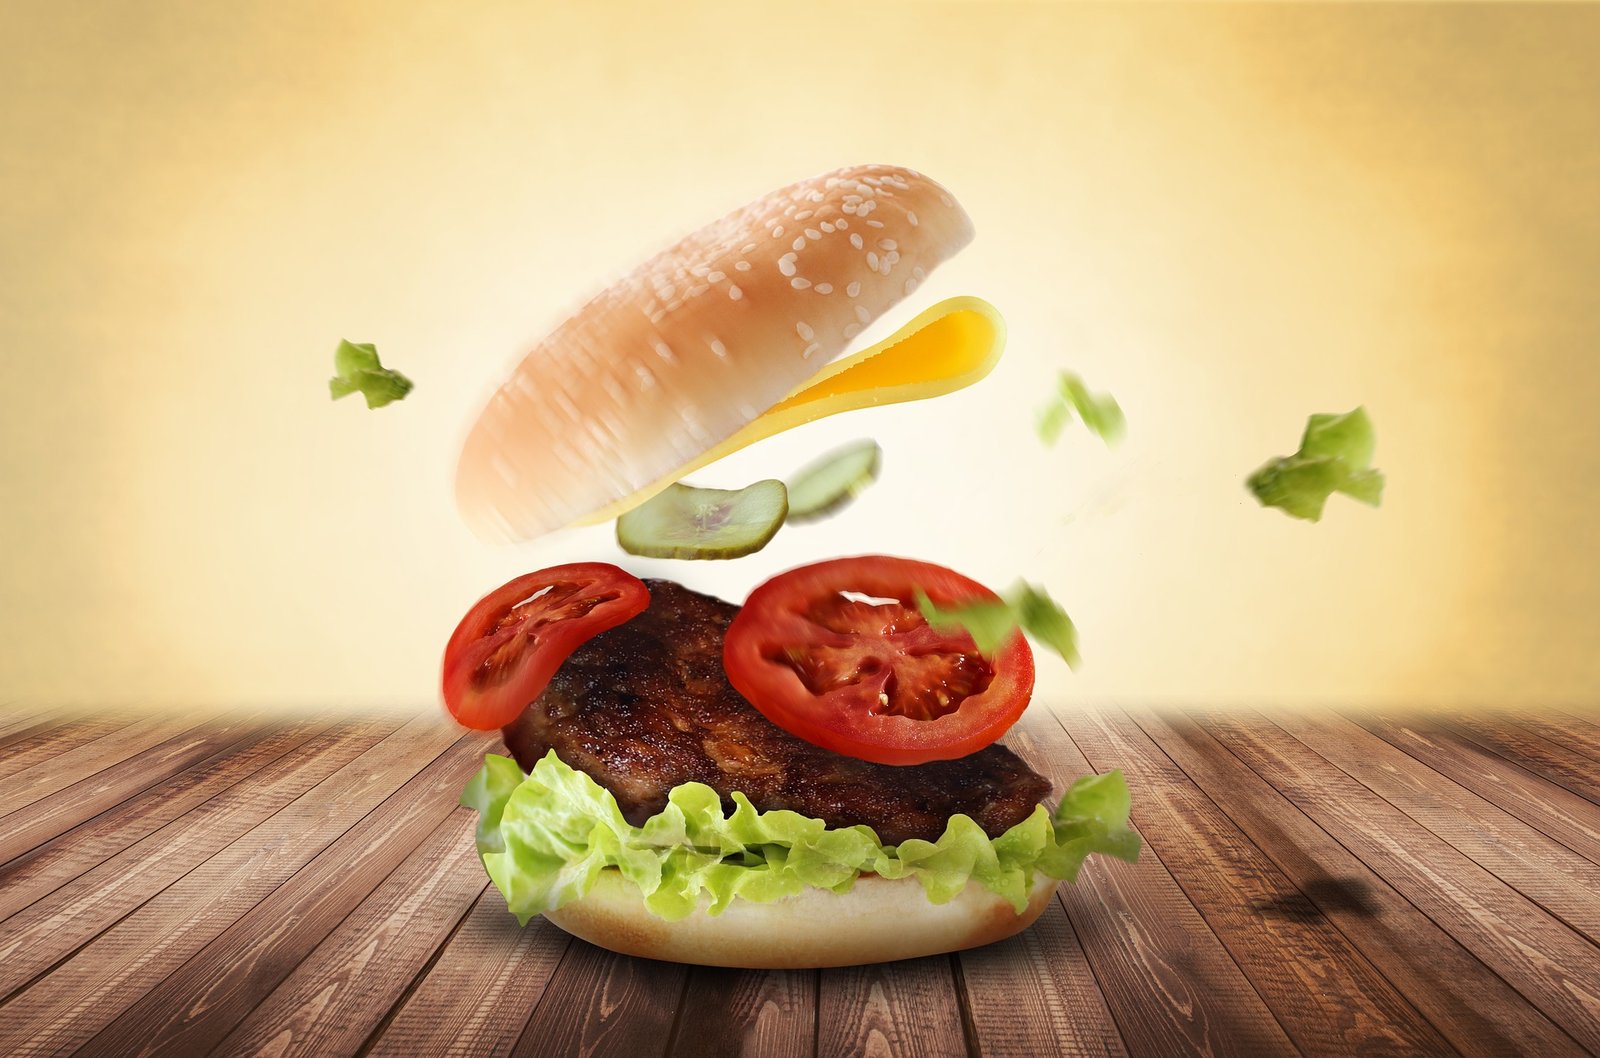 Inilah Cara Membuat Burger Lezat namun Sehat dan bergizi